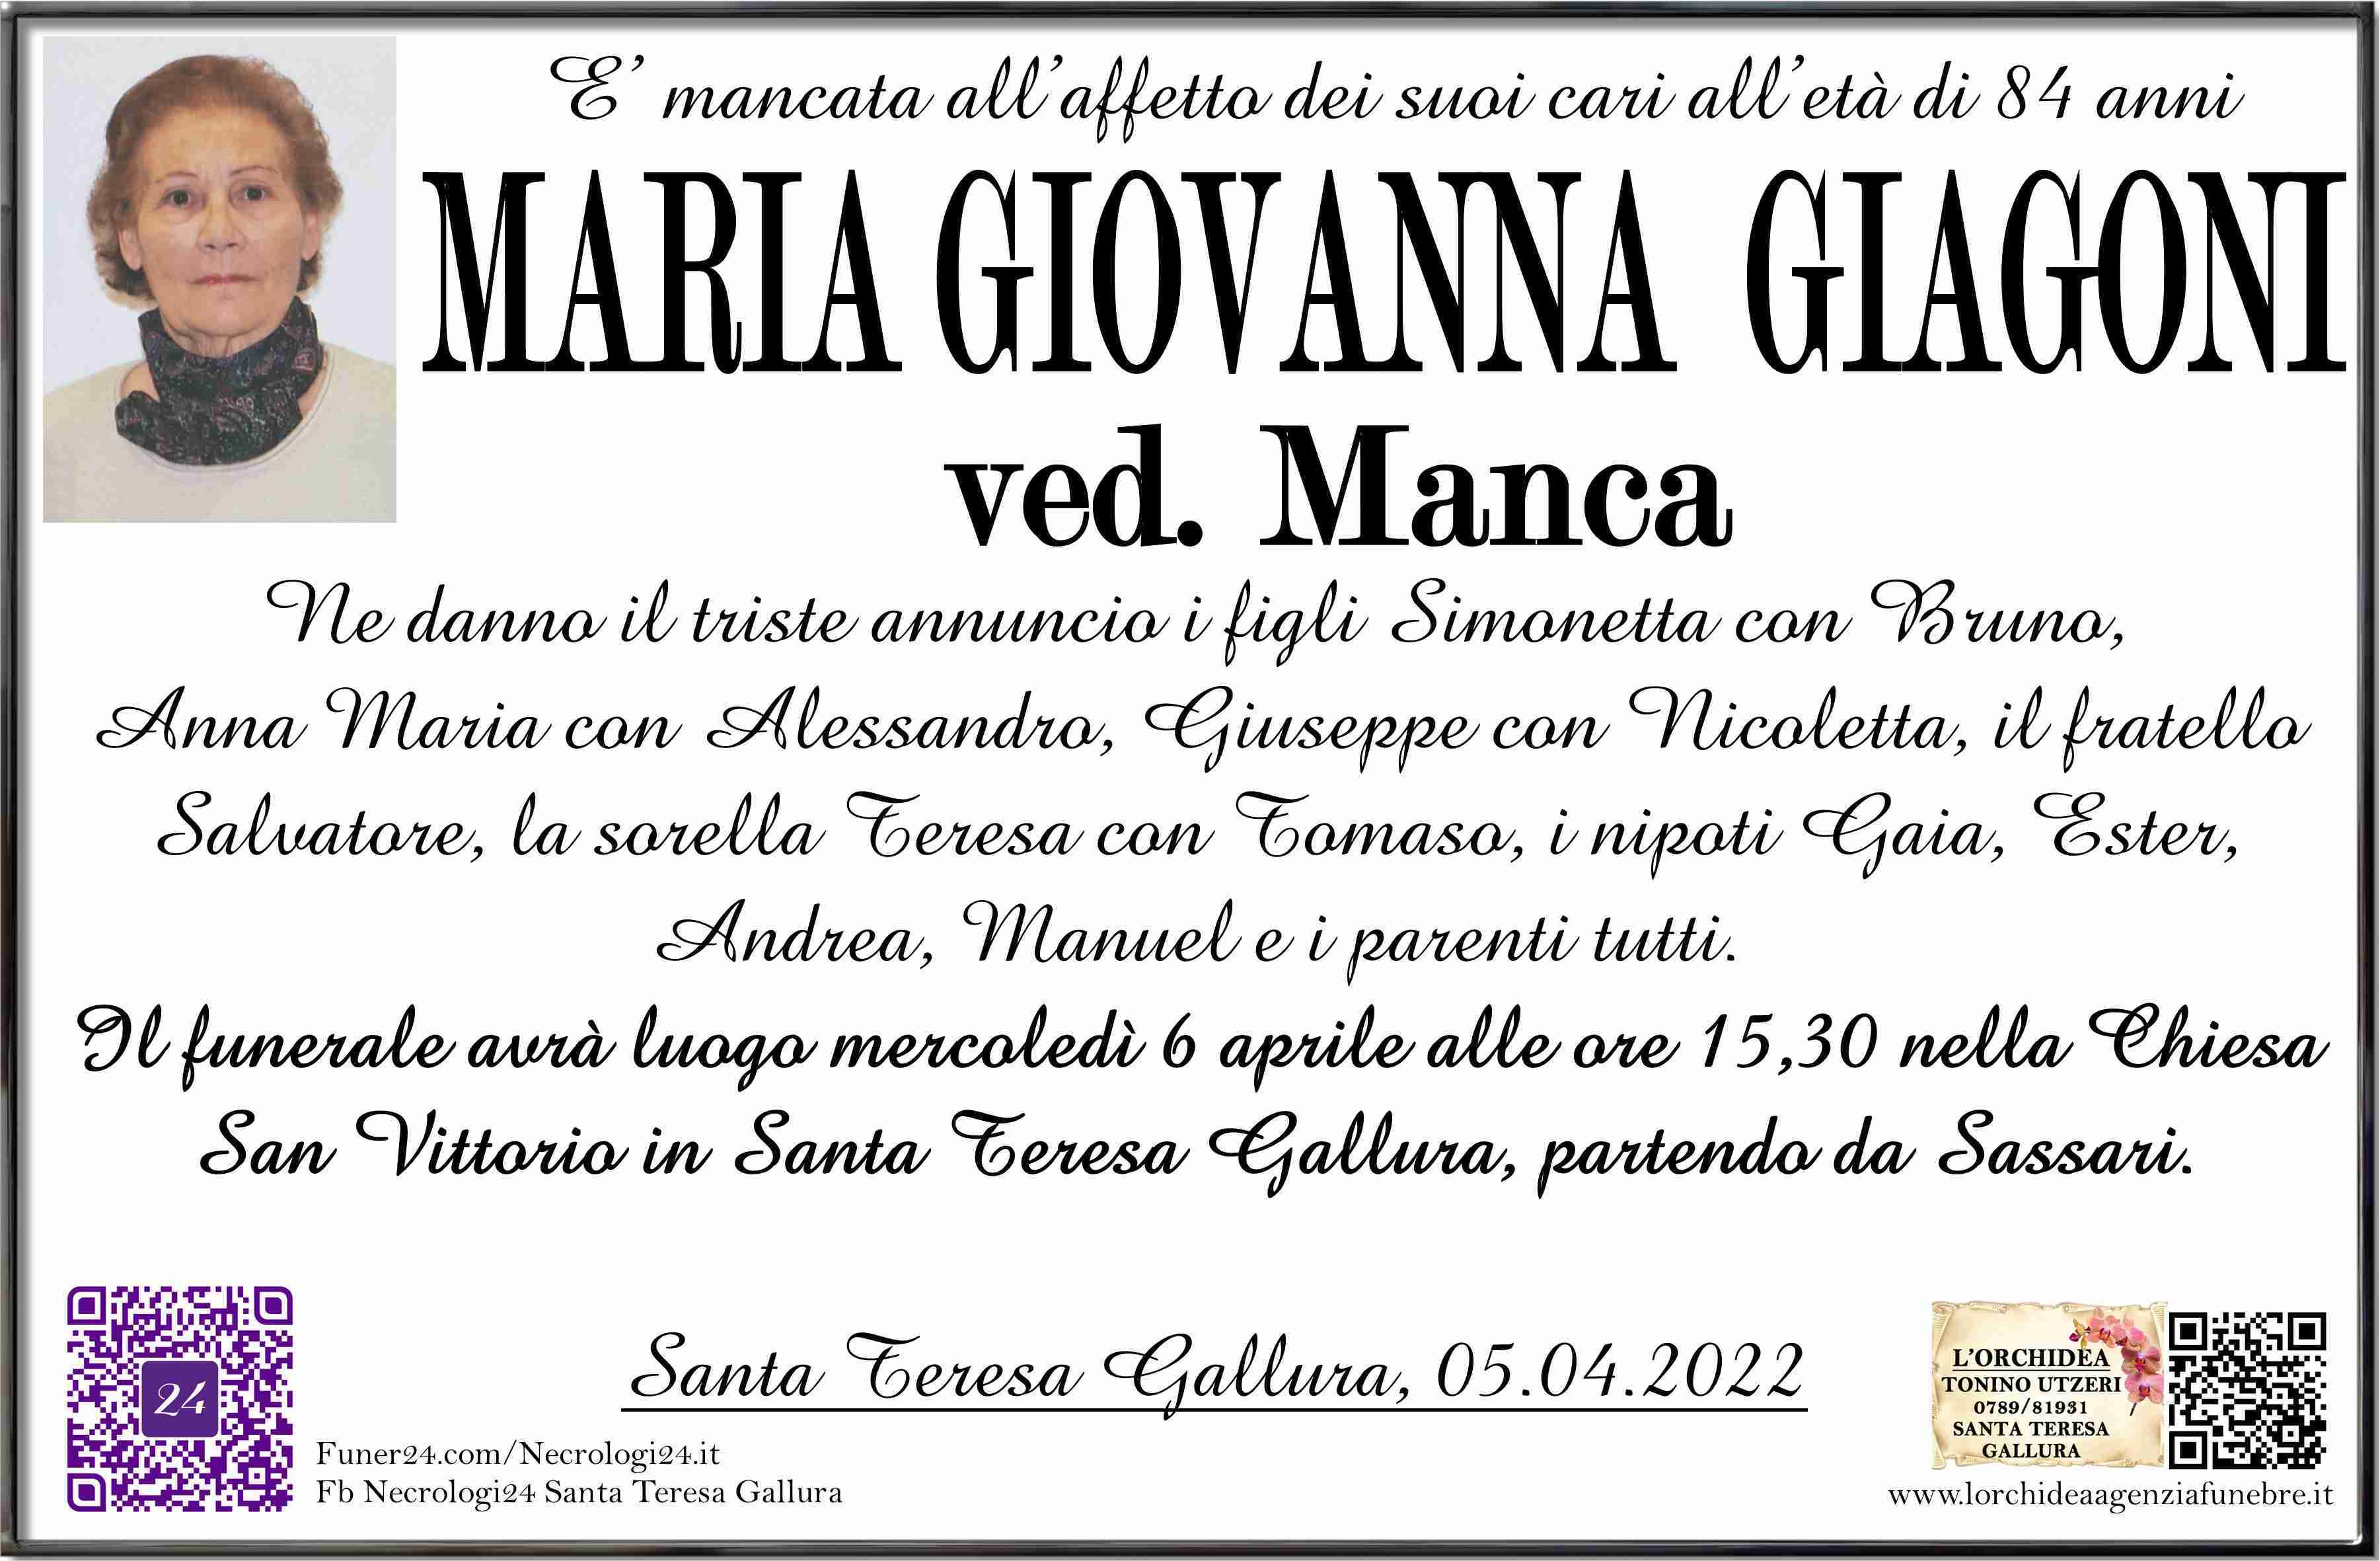 Maria Giovanna Giagoni